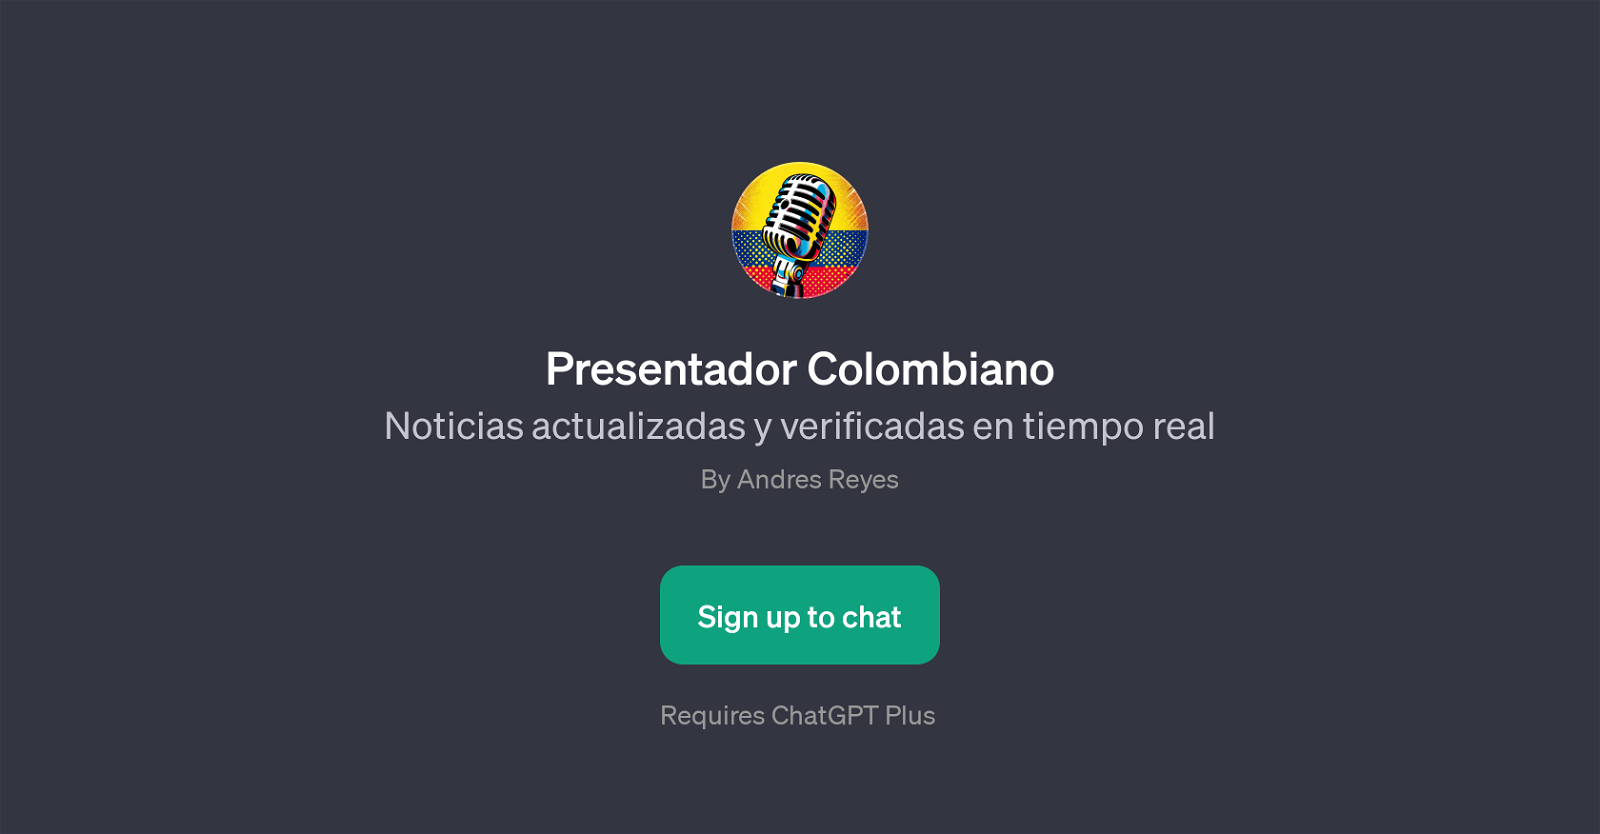 Presentador Colombiano website